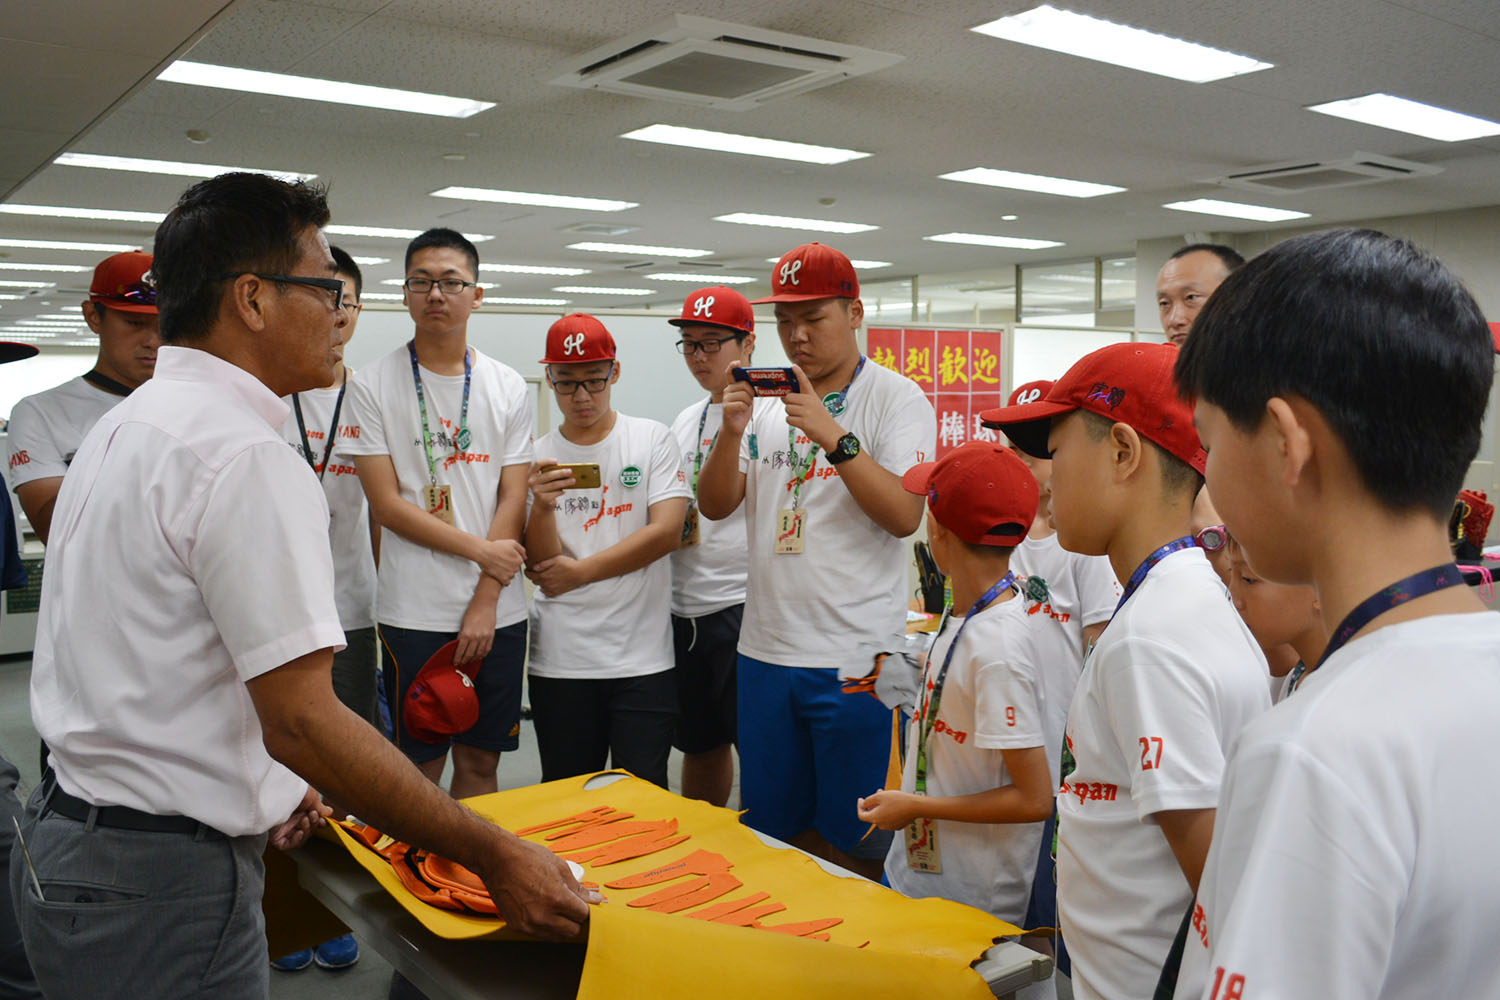 中国の少年野球チームと交流 道具を大切に野球を楽しむ 総合スポーツ用品のssk